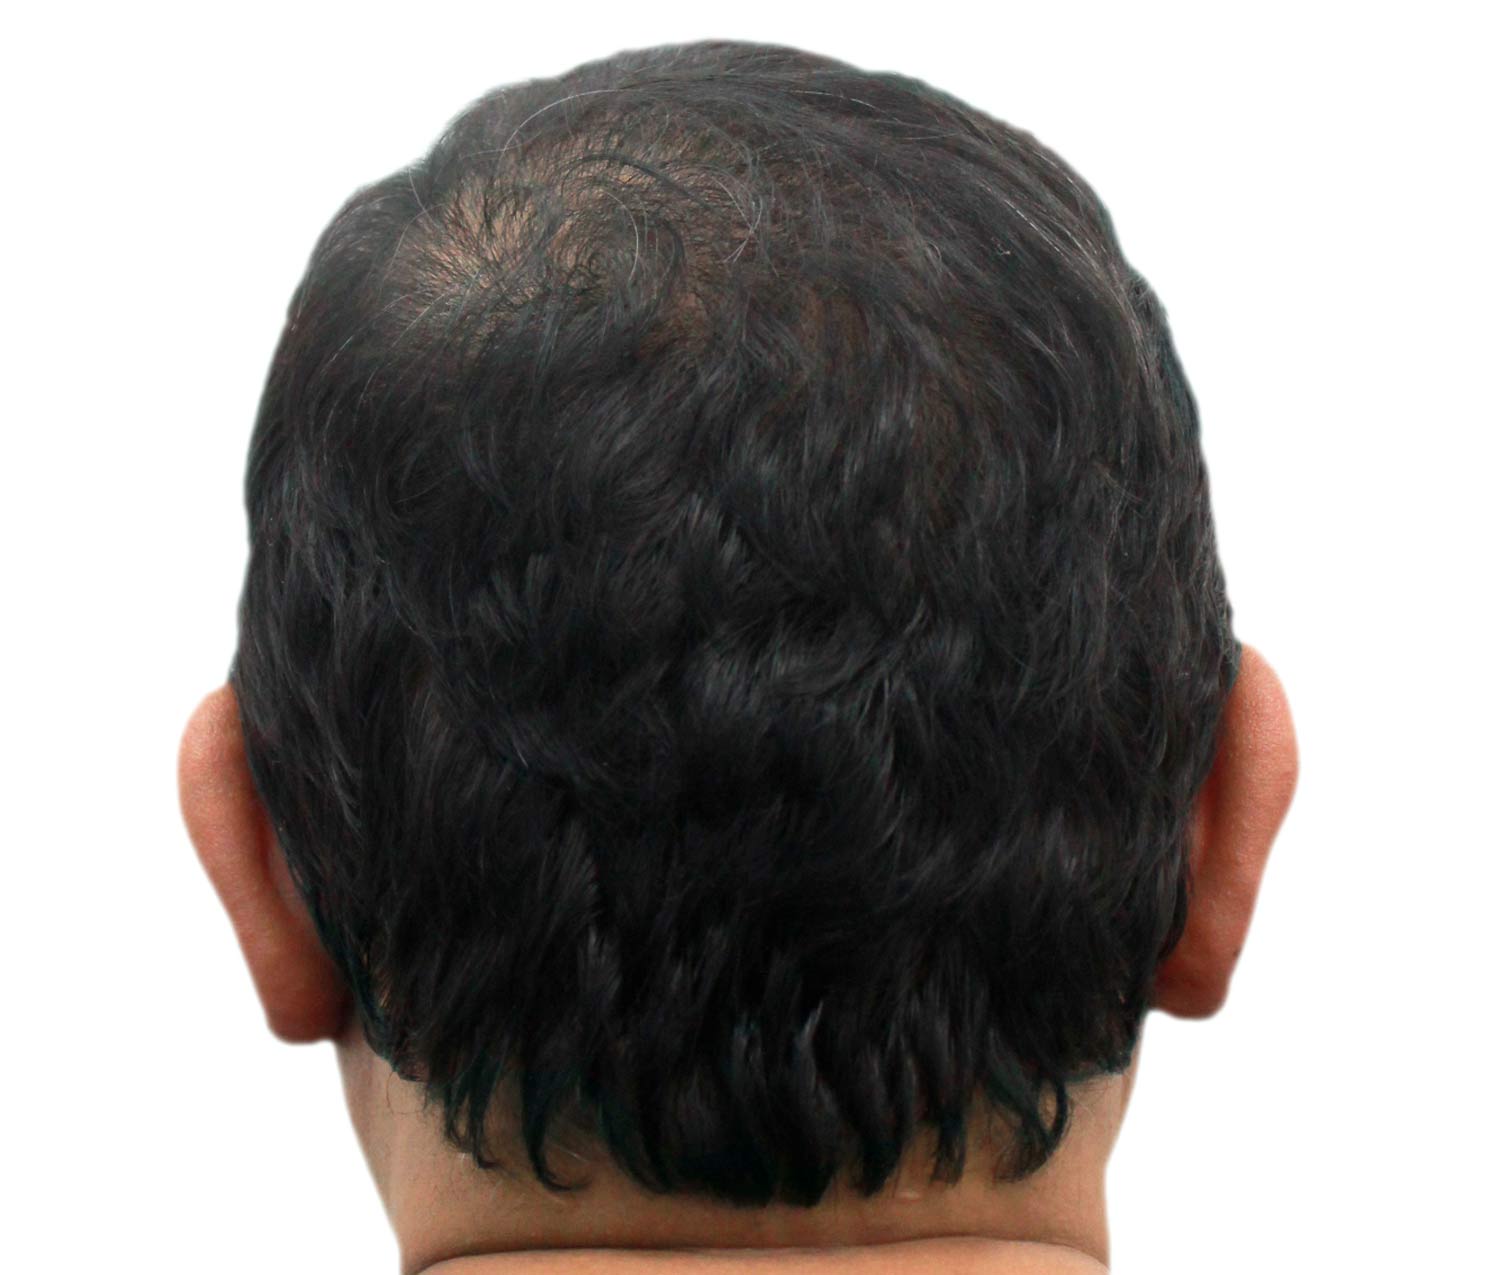 Después del injerto de cabello | Paciente real. Los resultados individuales pueden variar.